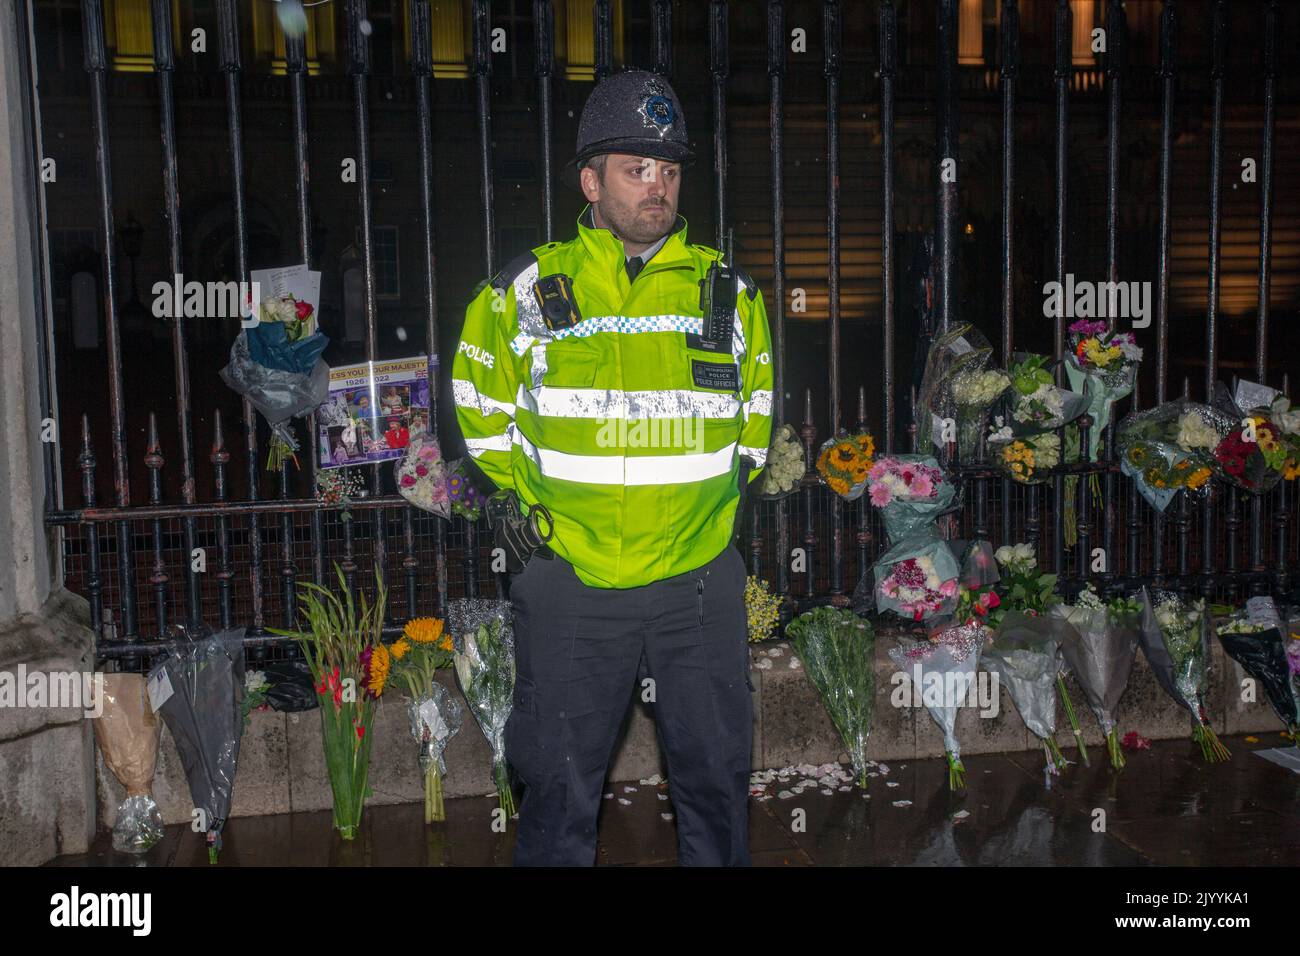 LONDON, ENGLAND - 08. SEPTEMBER: Polizeibeamte stehen unter floralen Ehrungen, die vor dem Buckingham Palace im Zentrum Londons nach der Bekanntgabe des Todes von Königin Elizabeth II. Hinterlassen wurden.Quelle: Horst A. Friedrichs Alamy Live News Stockfoto